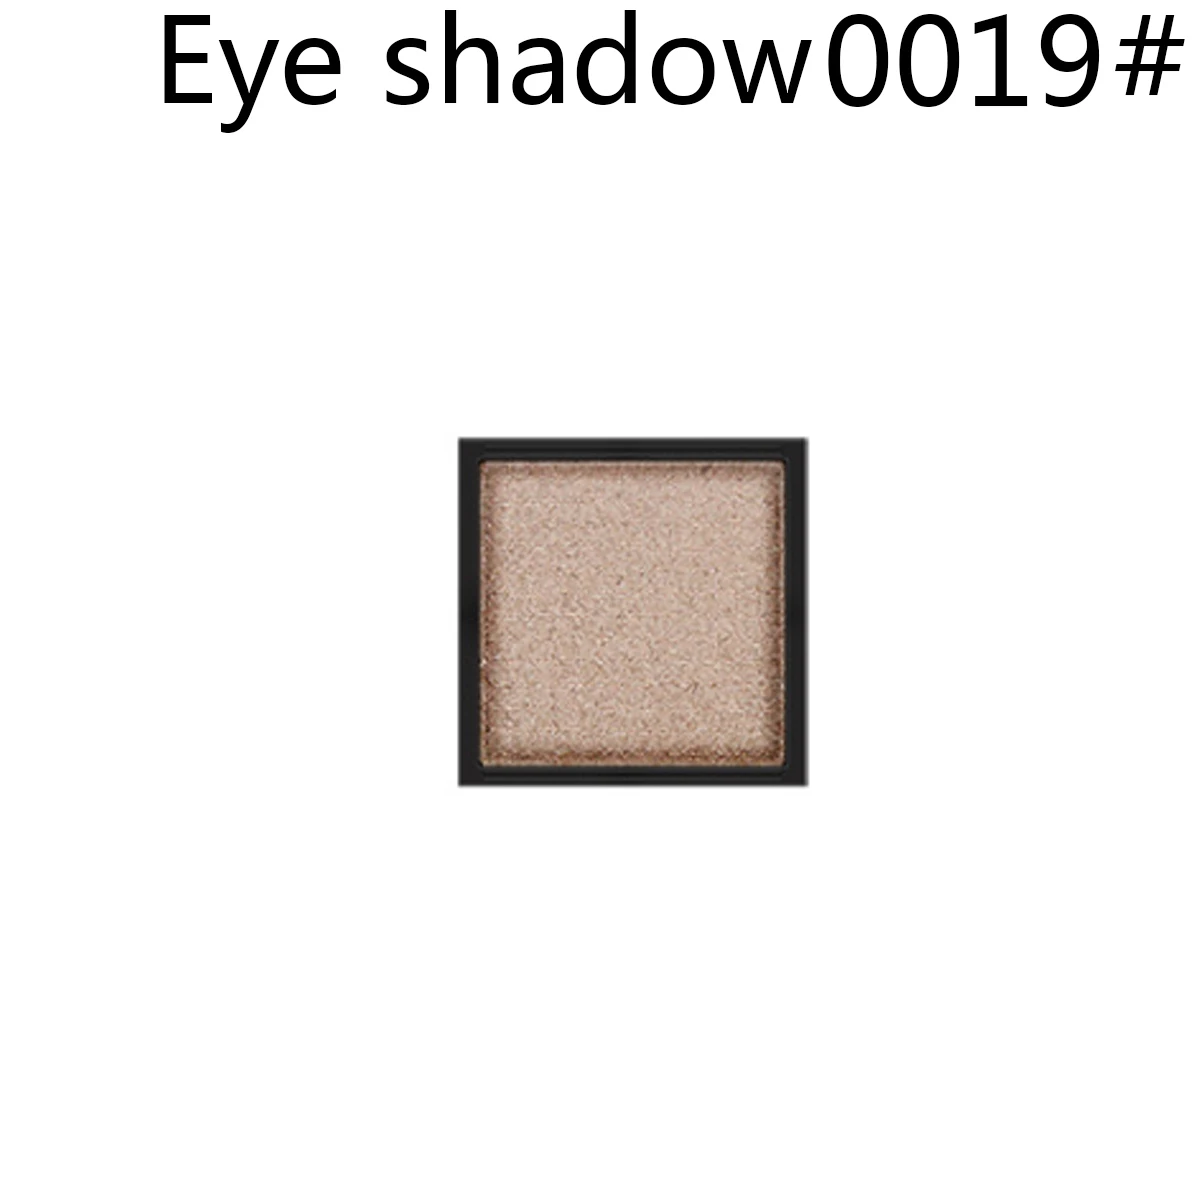 DIY Модная палитра теней для век матовые глаза, тени, голые палитры блестящие тени для век телесный косметический набор для макияжа Палитра теней для век - Цвет: Eye shadow 0019